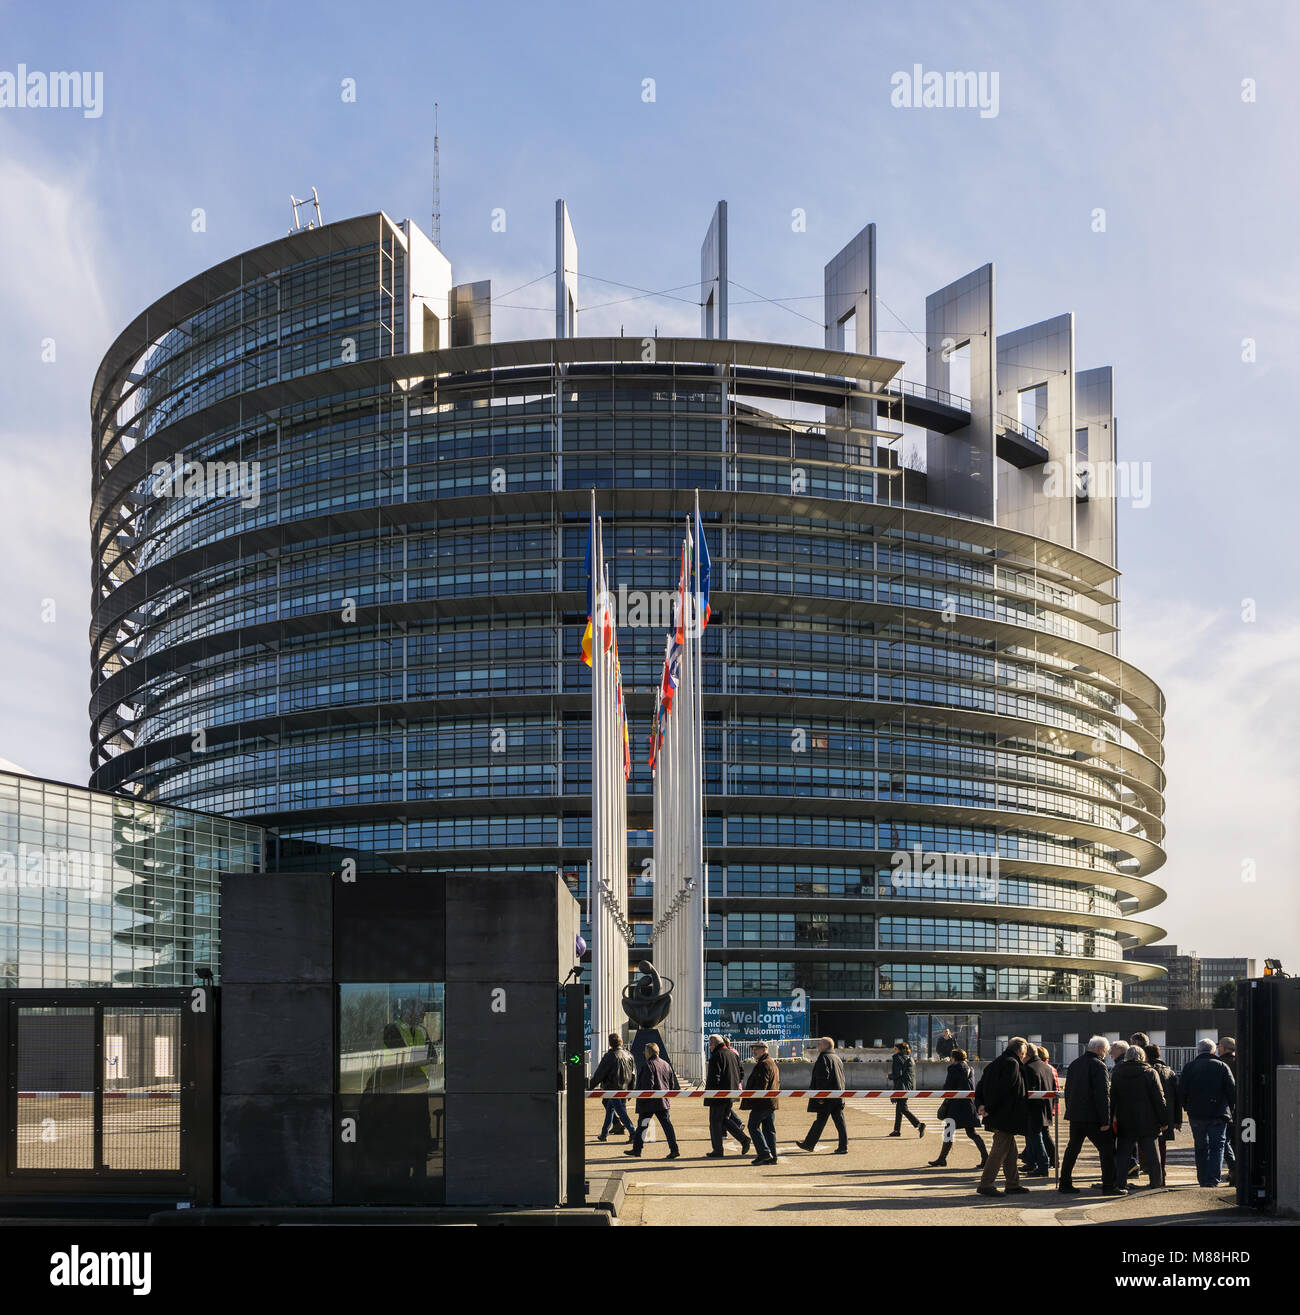 El edificio Louise Weiss, sede del Parlamento Europeo, con los turistas que llegan en Estrasburgo, Francia. Foto de stock